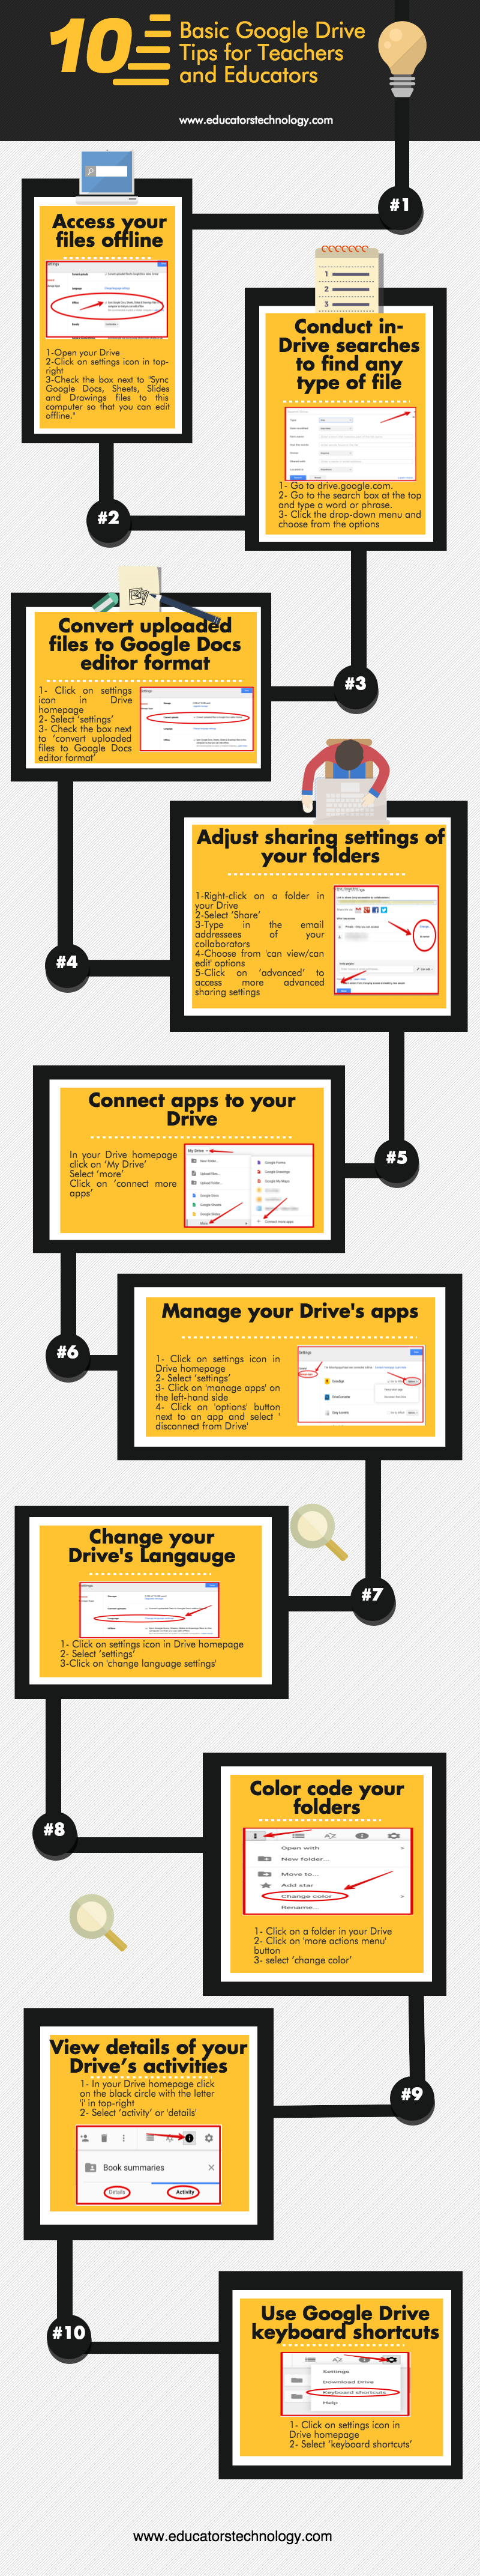 10 funciones utiles de Google Drive para profesores